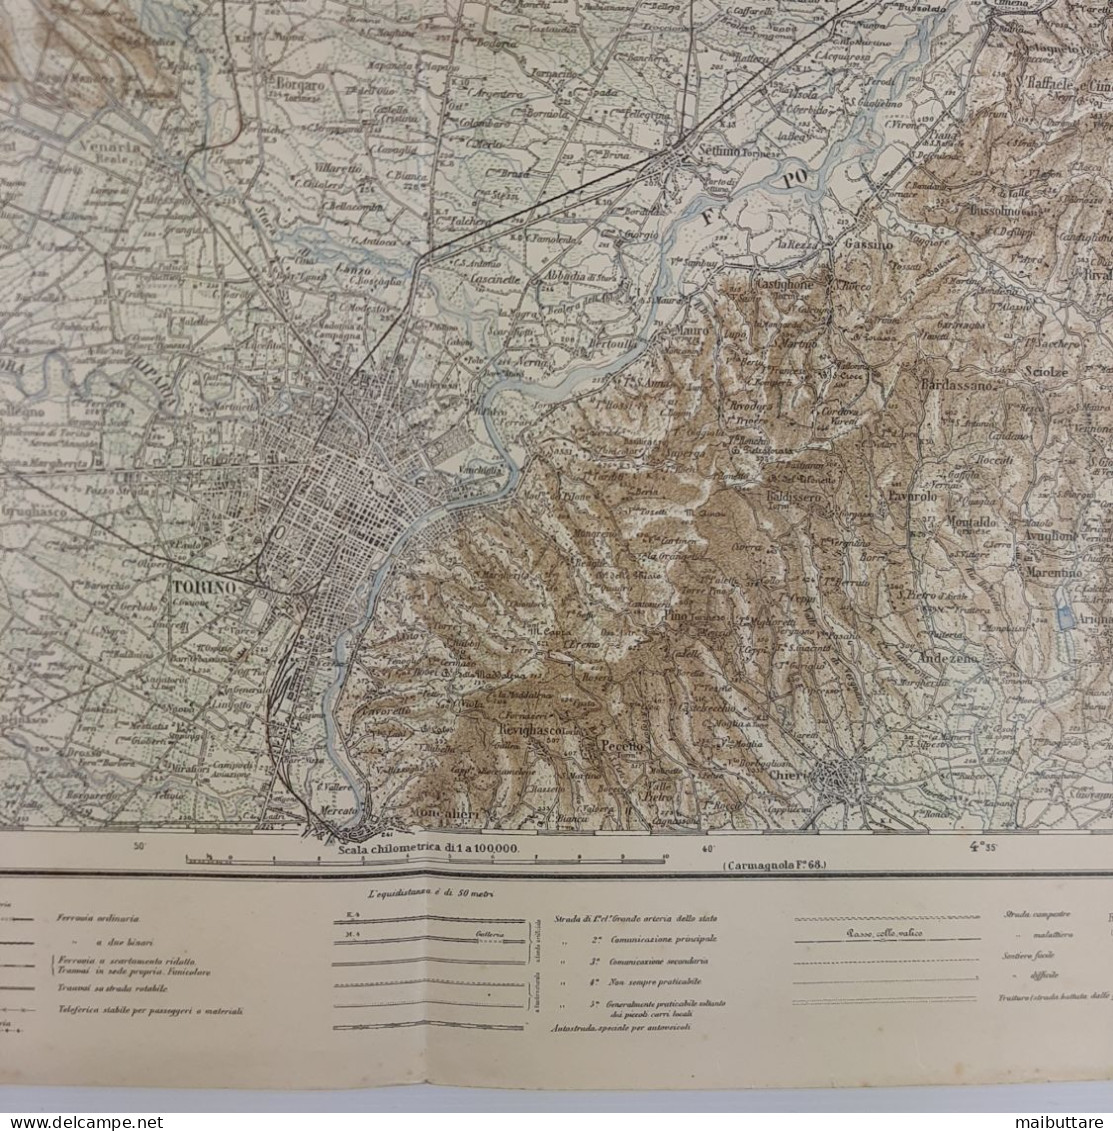 Carta Geografica, Cartina Mappa Militare Torino Piemonte F56 Della Carta D'Italia Scala 1:25.000 - Carte Geographique